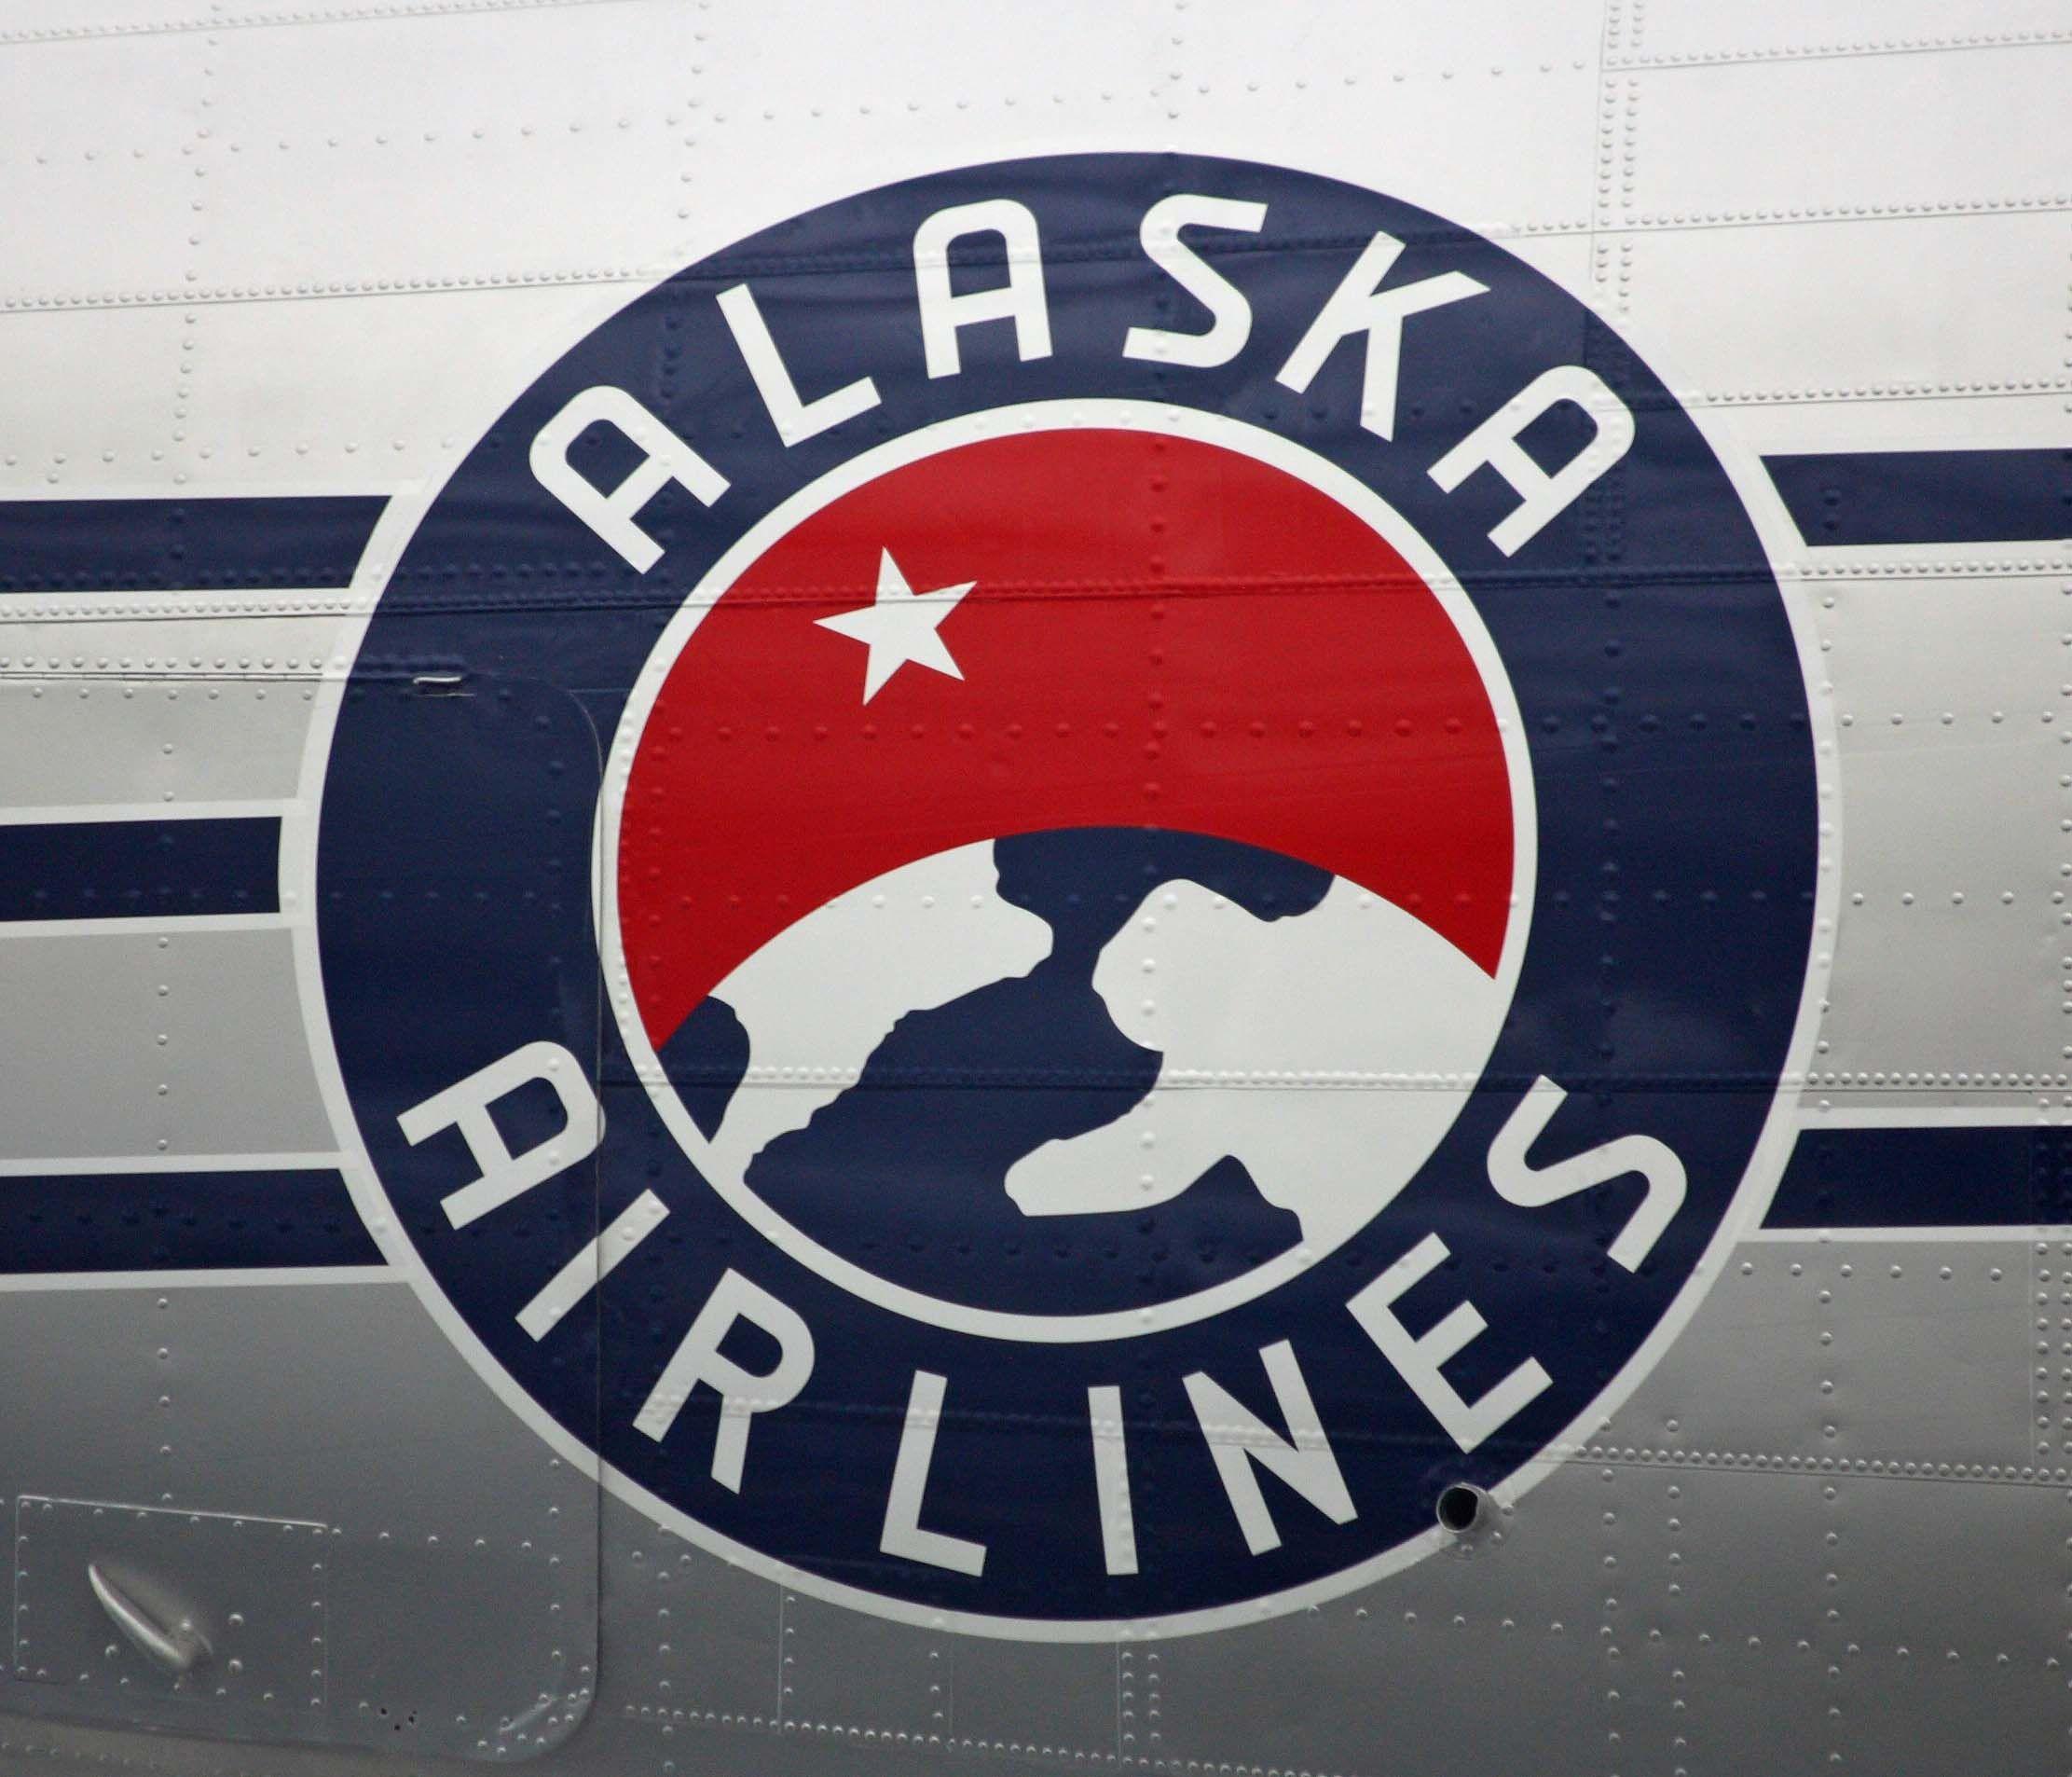 Alaska Airlines Old Logo - Old Alaska Airlines logo on a DC